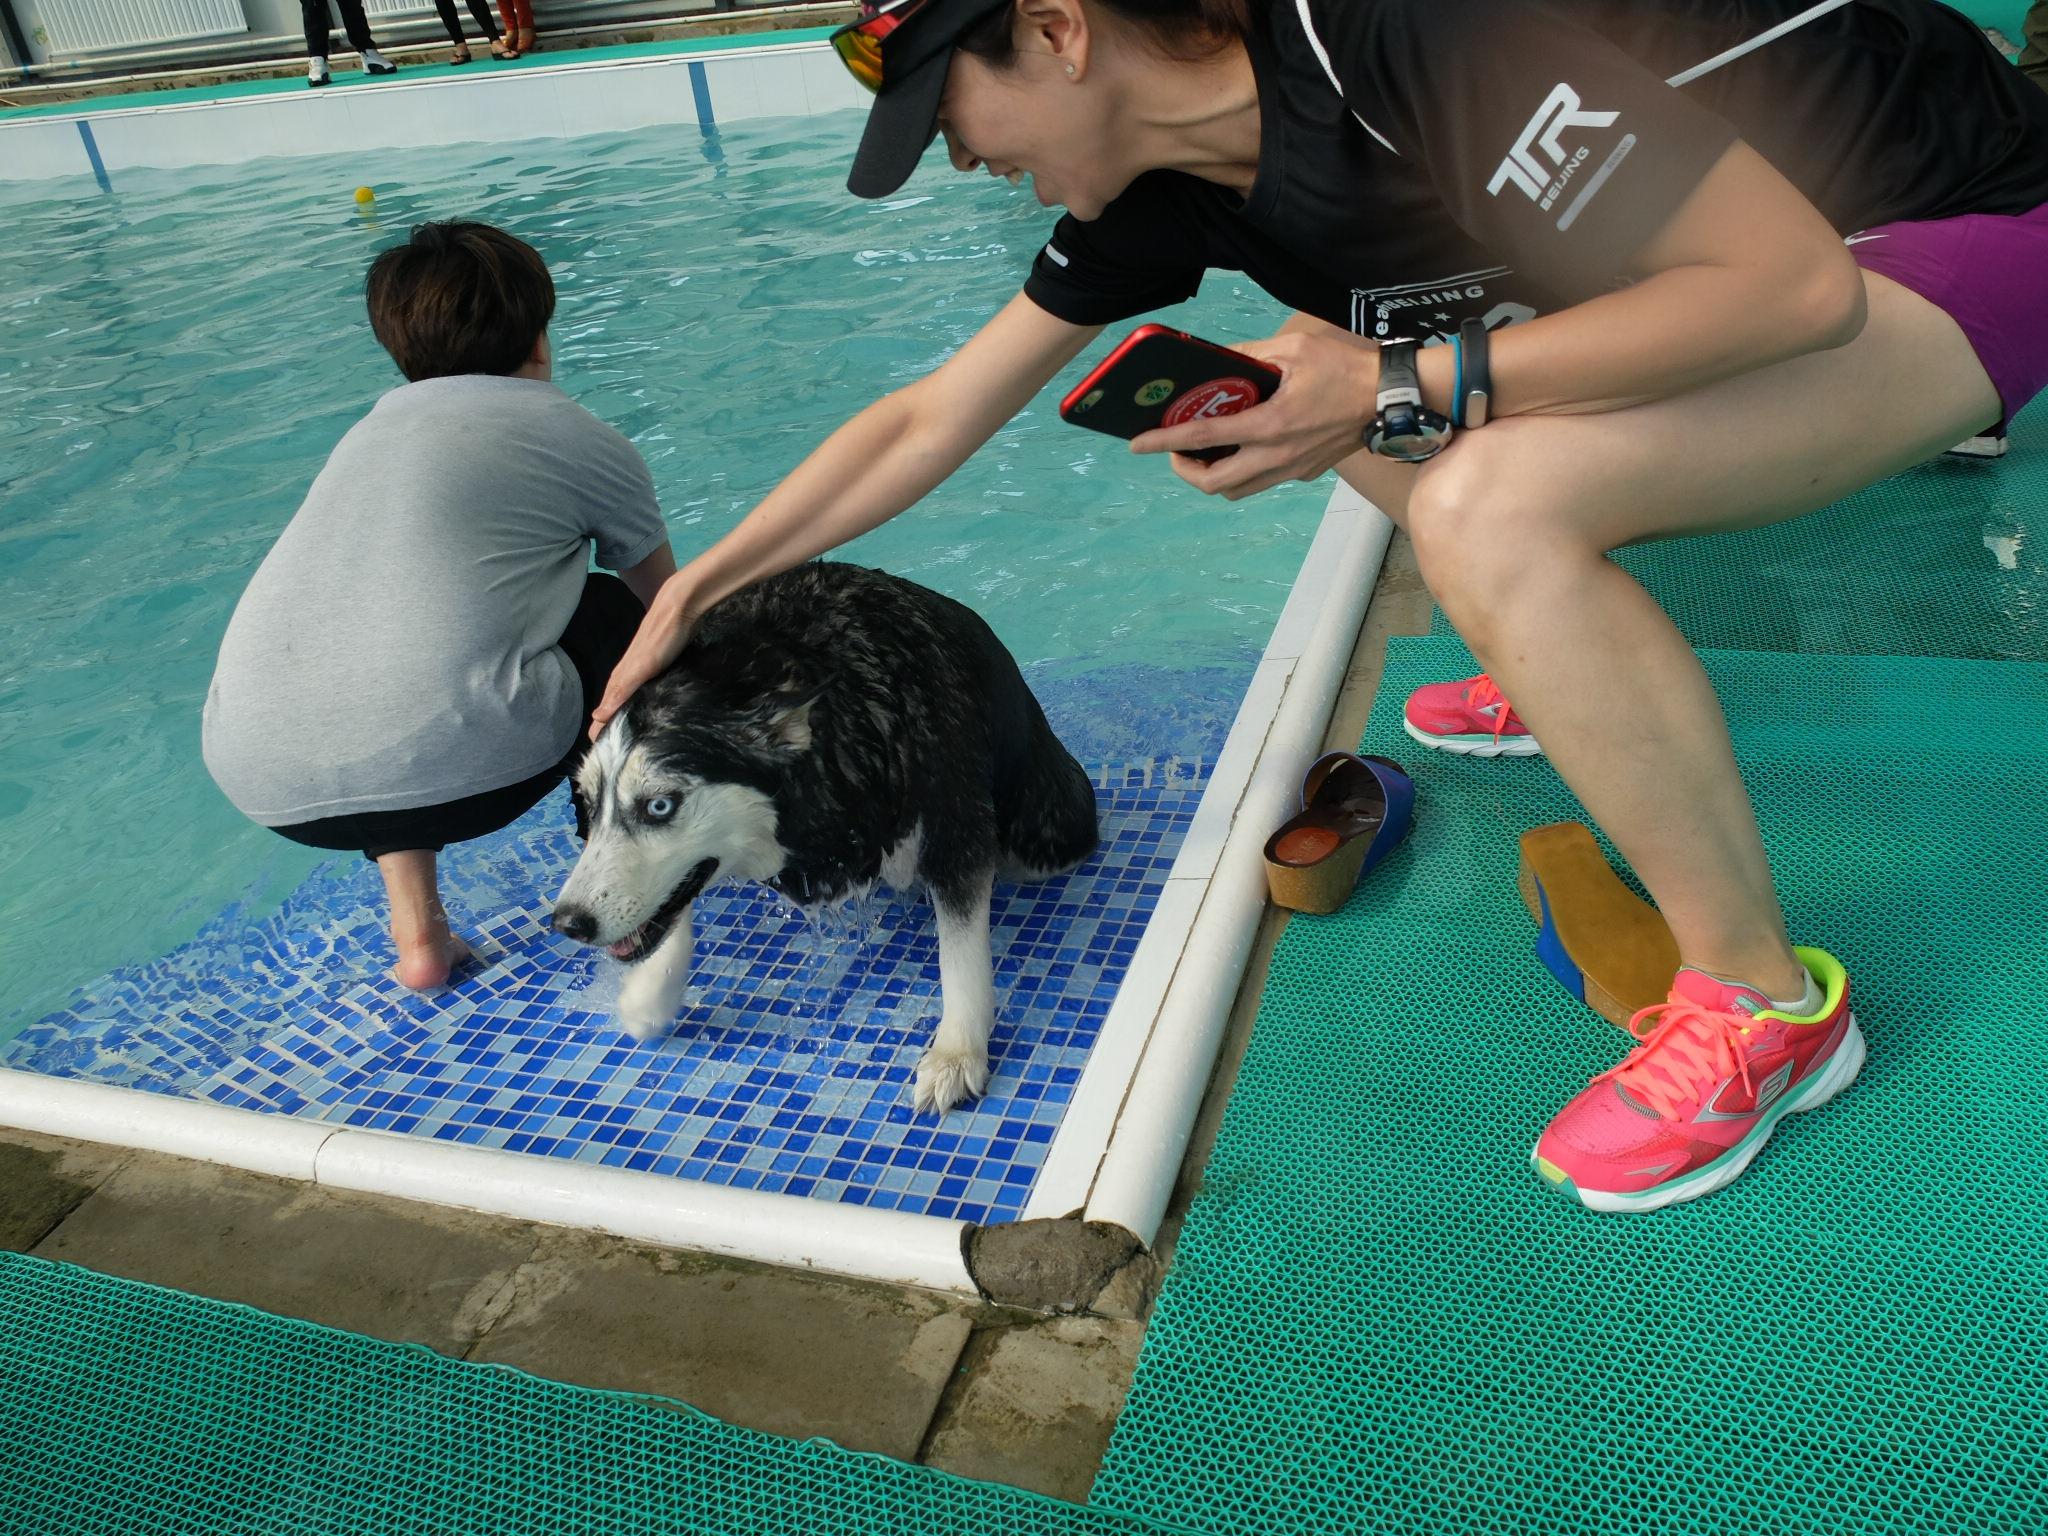 韩国光州举行全国宠物狗游泳大赛 为世界游泳锦标赛造势